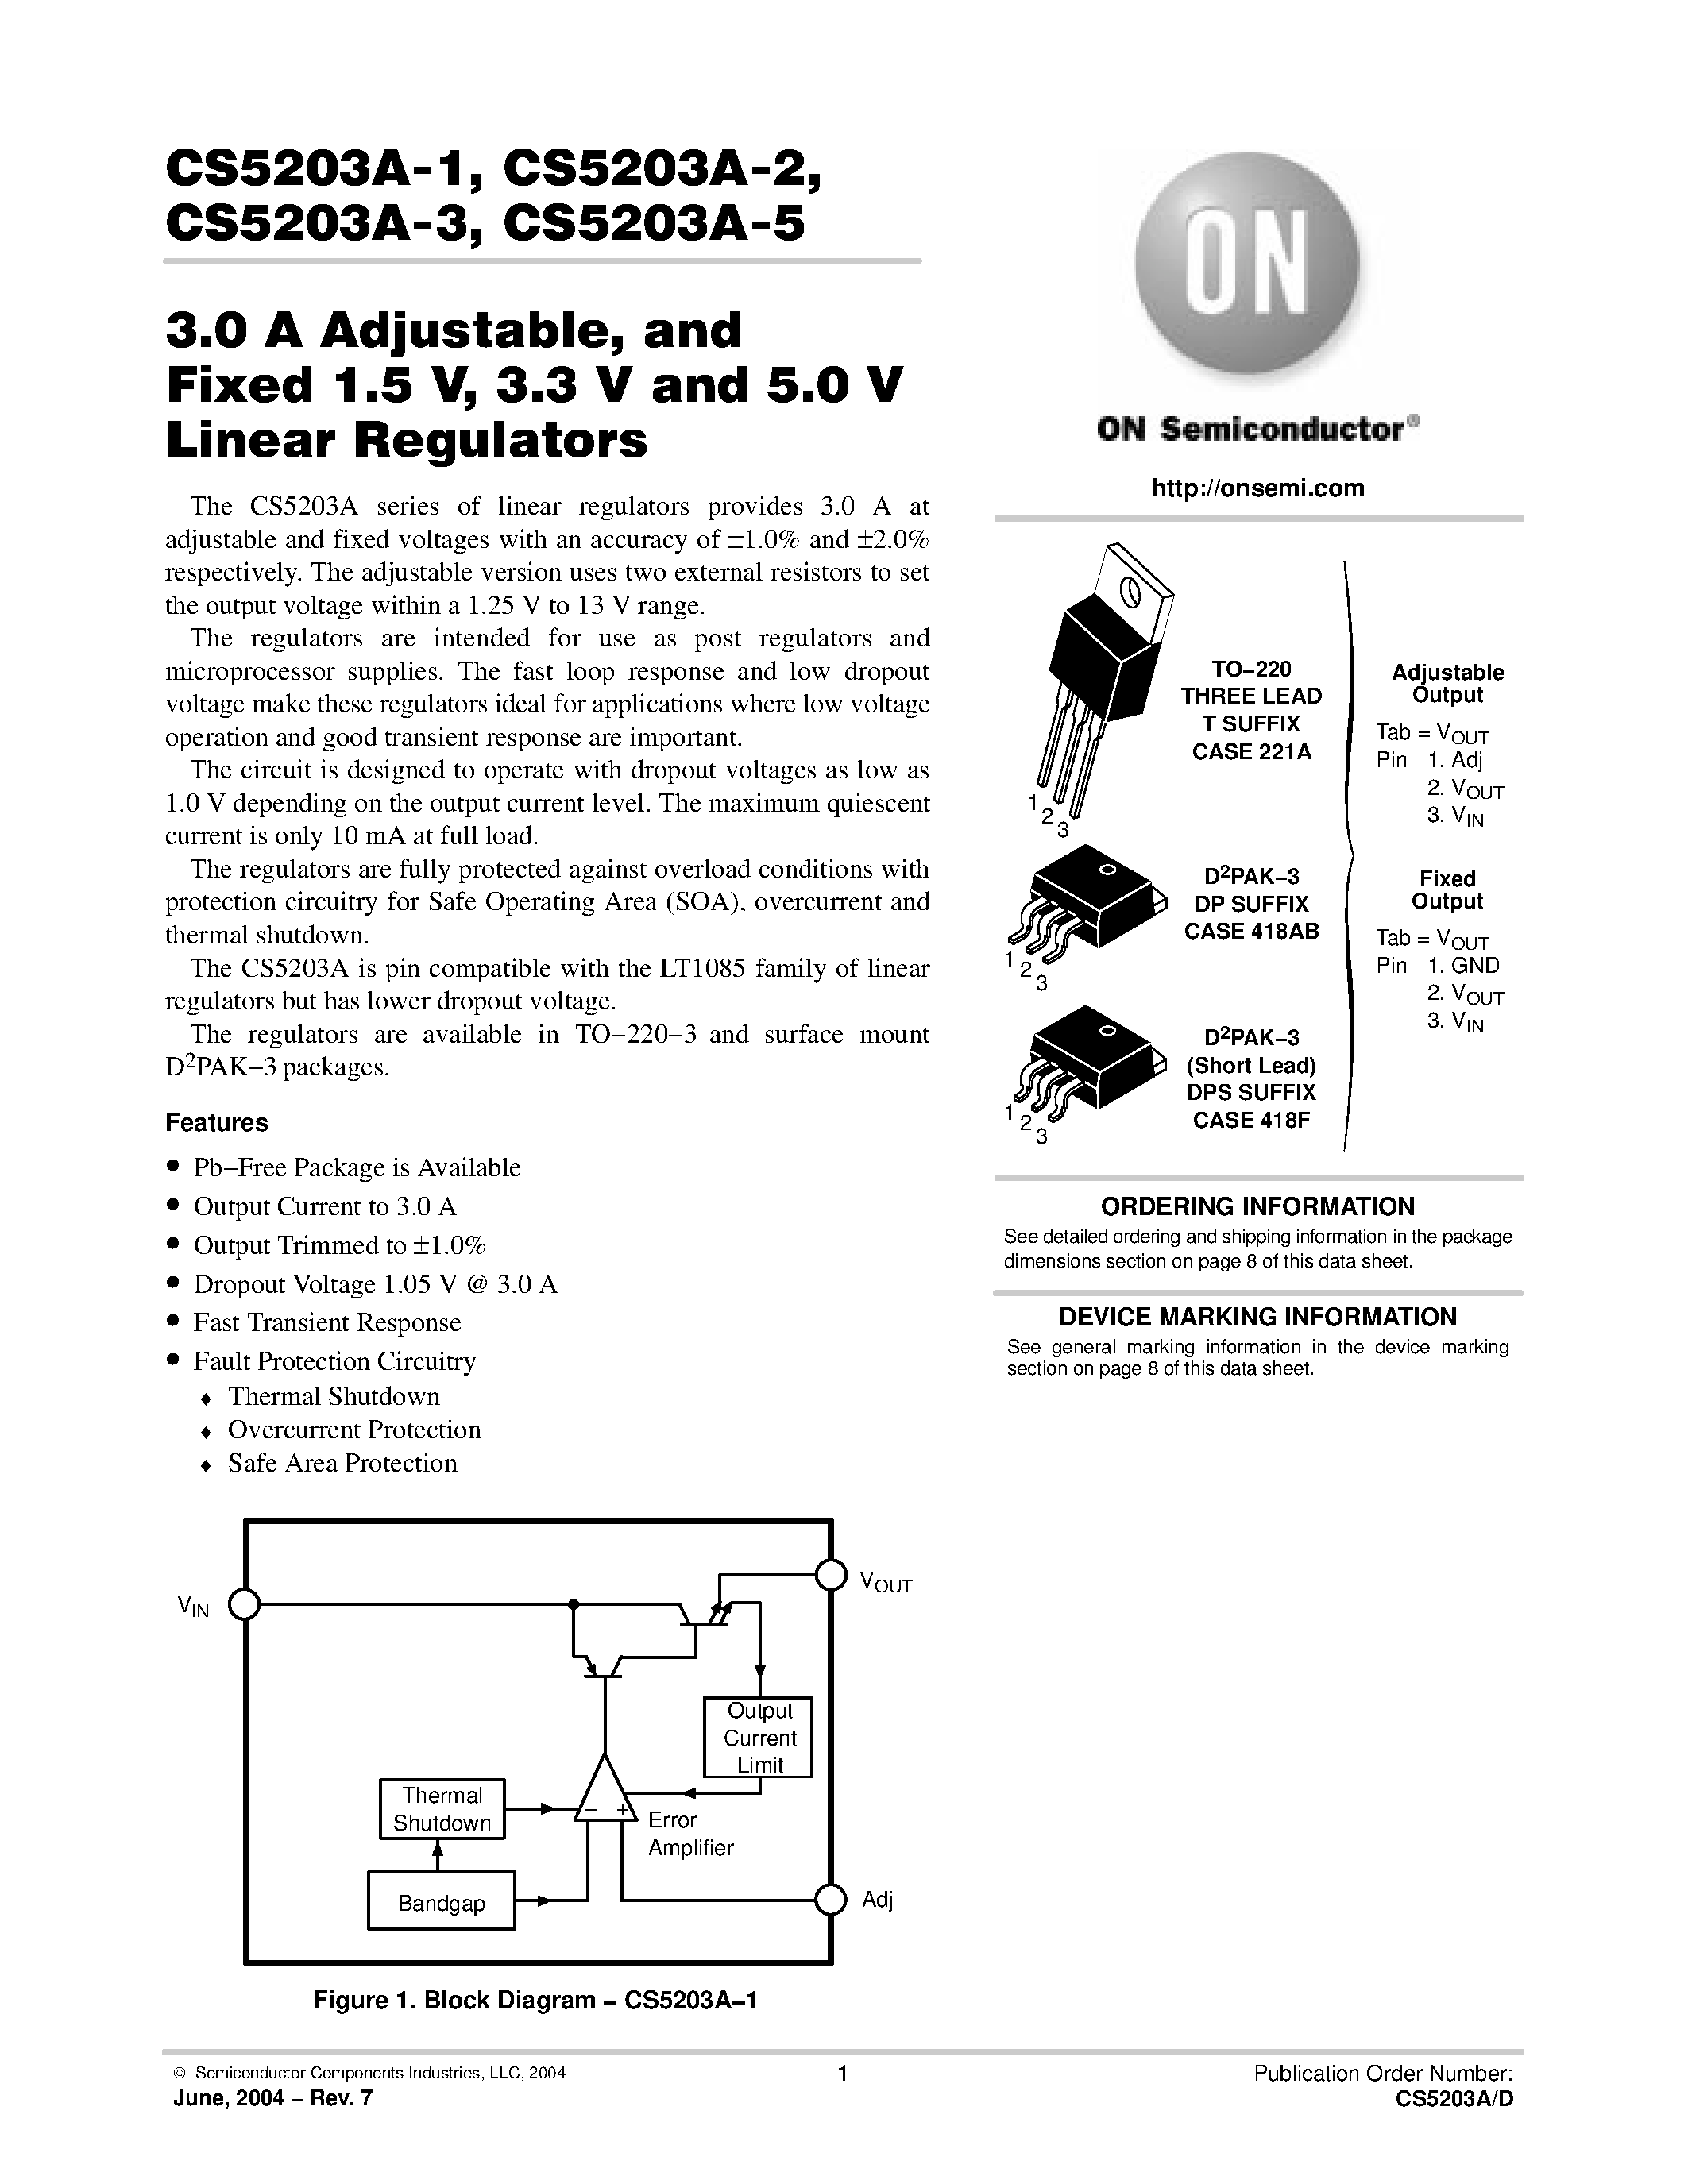 Даташит CS5203A-3 - 3.0 A Adjustable/ and Fixed 1.5 V/ 3.3 V and 5.0 V Linear Regulators страница 1